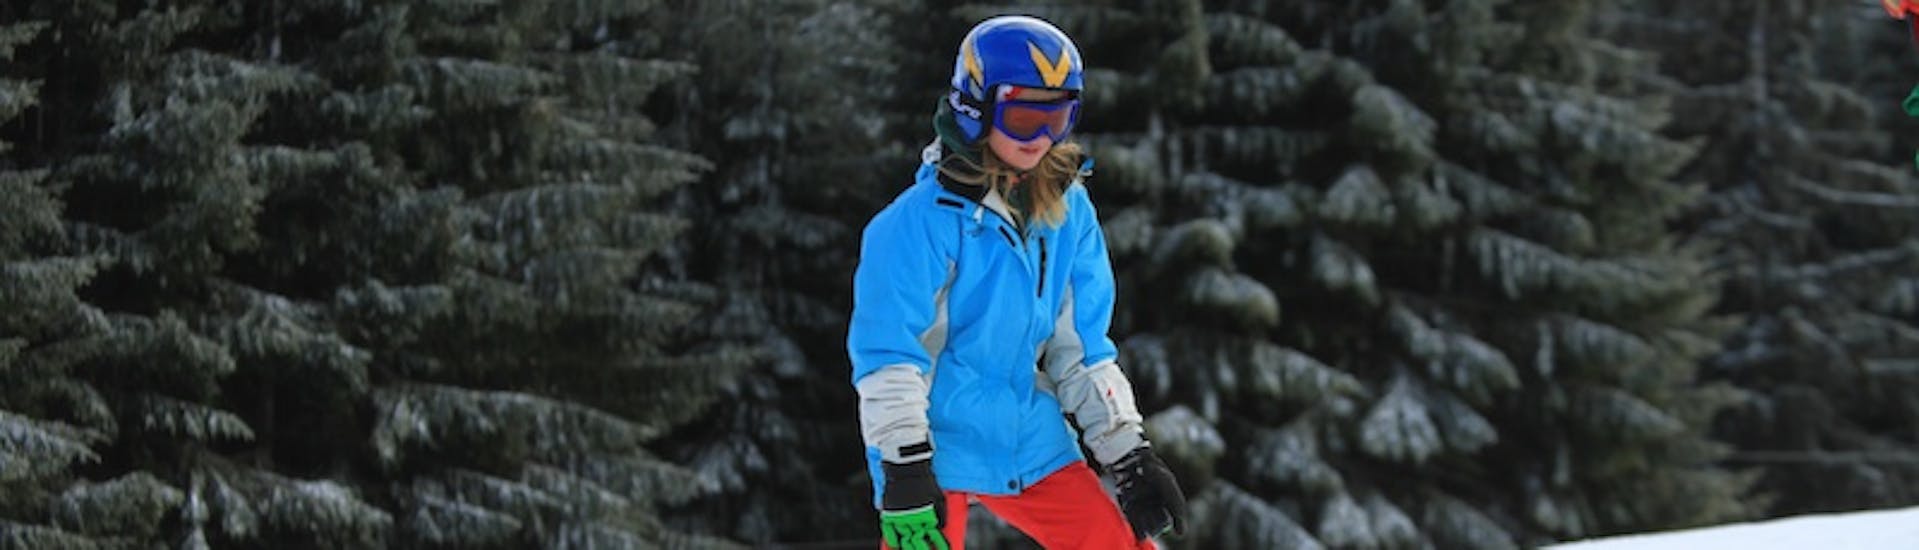 Meisje skiet naar beneden in de sneeuwploeg tijdens privé skilessen voor kinderen van alle niveaus met Skischool Nova.